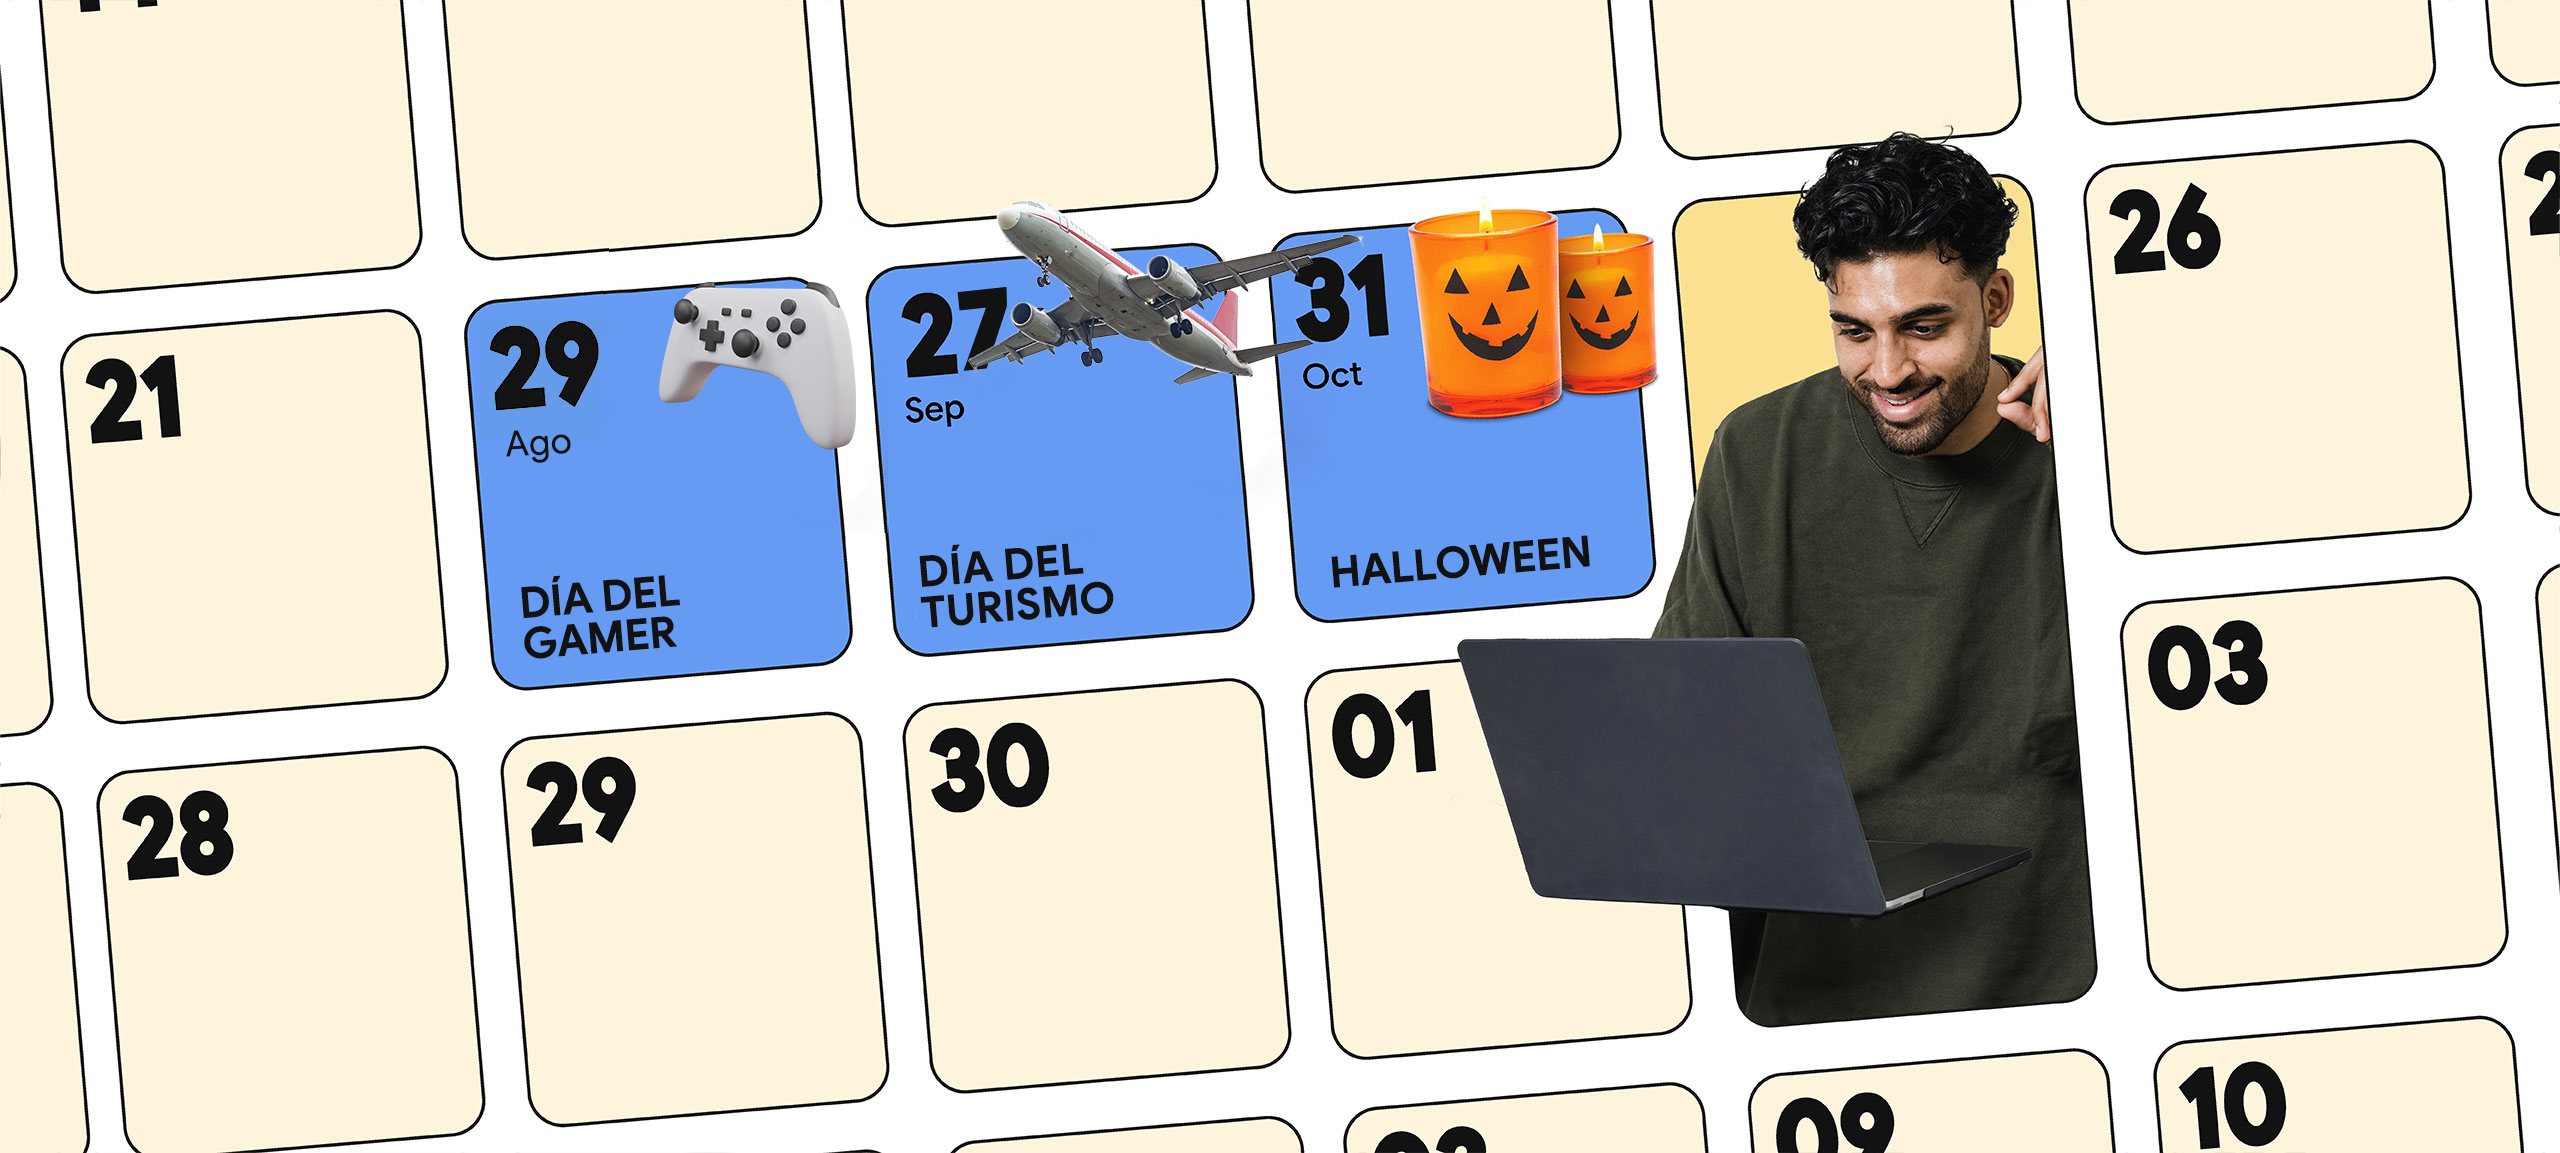 Un hombre de piel oscura y cabello oscuro rizado compra en una computadora portátil. Está rodeado por una cuadrícula de calendario con tres fechas resaltadas: